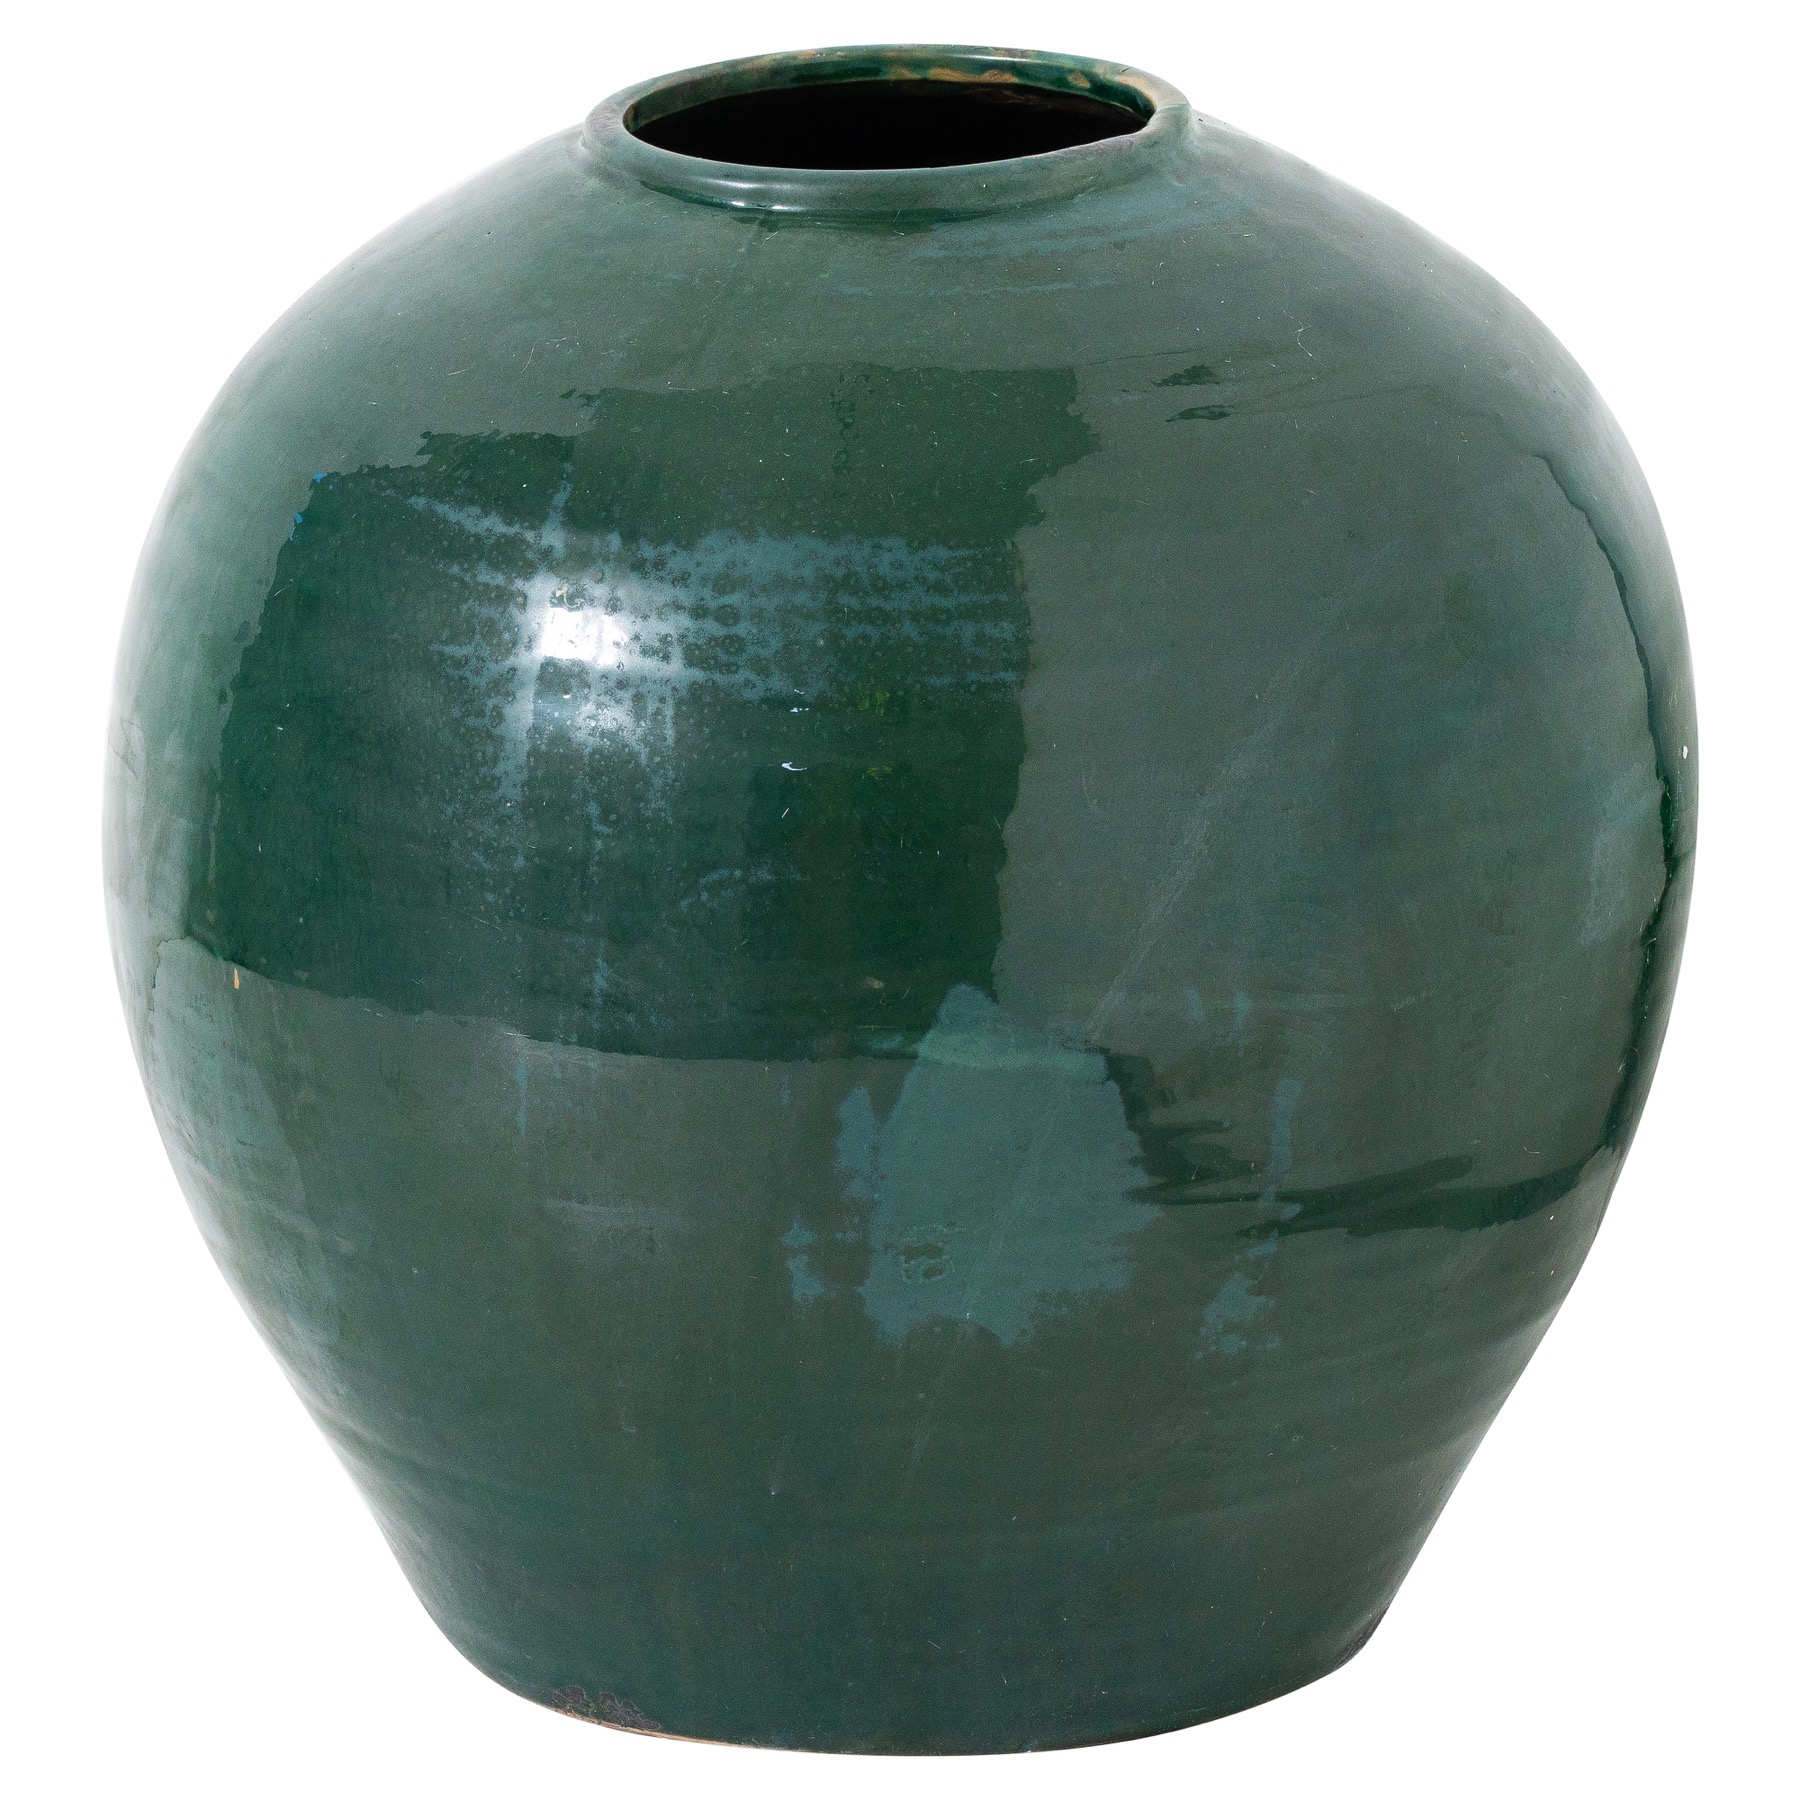 Garda Emerald Glazed Regola Vase - Image 1